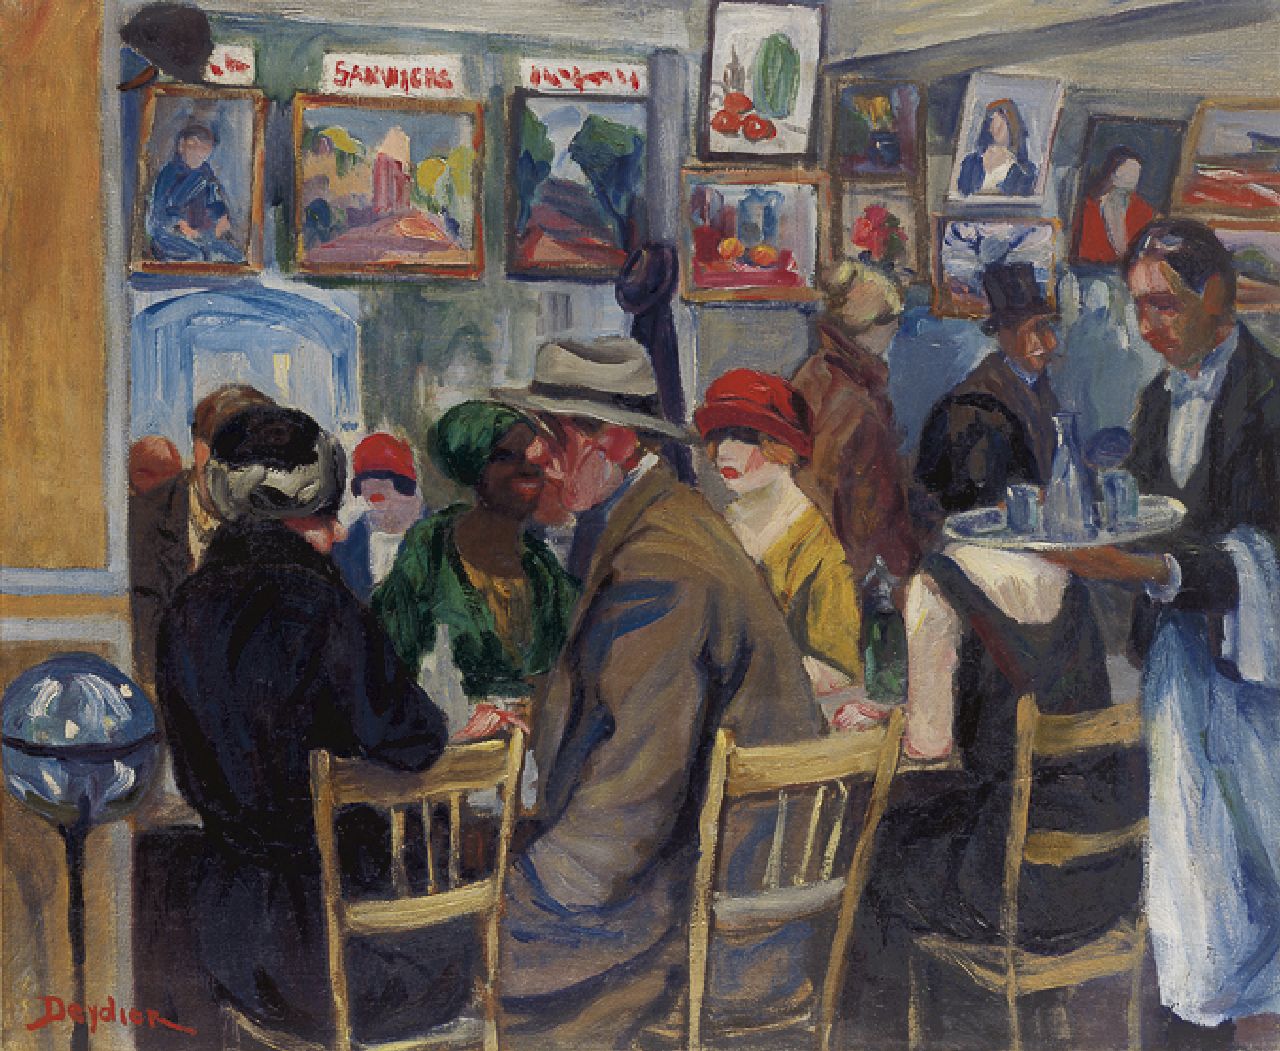 Deydier R.  | René Deydier, Frans café, olieverf op doek 53,9 x 65,1 cm, gesigneerd linksonder